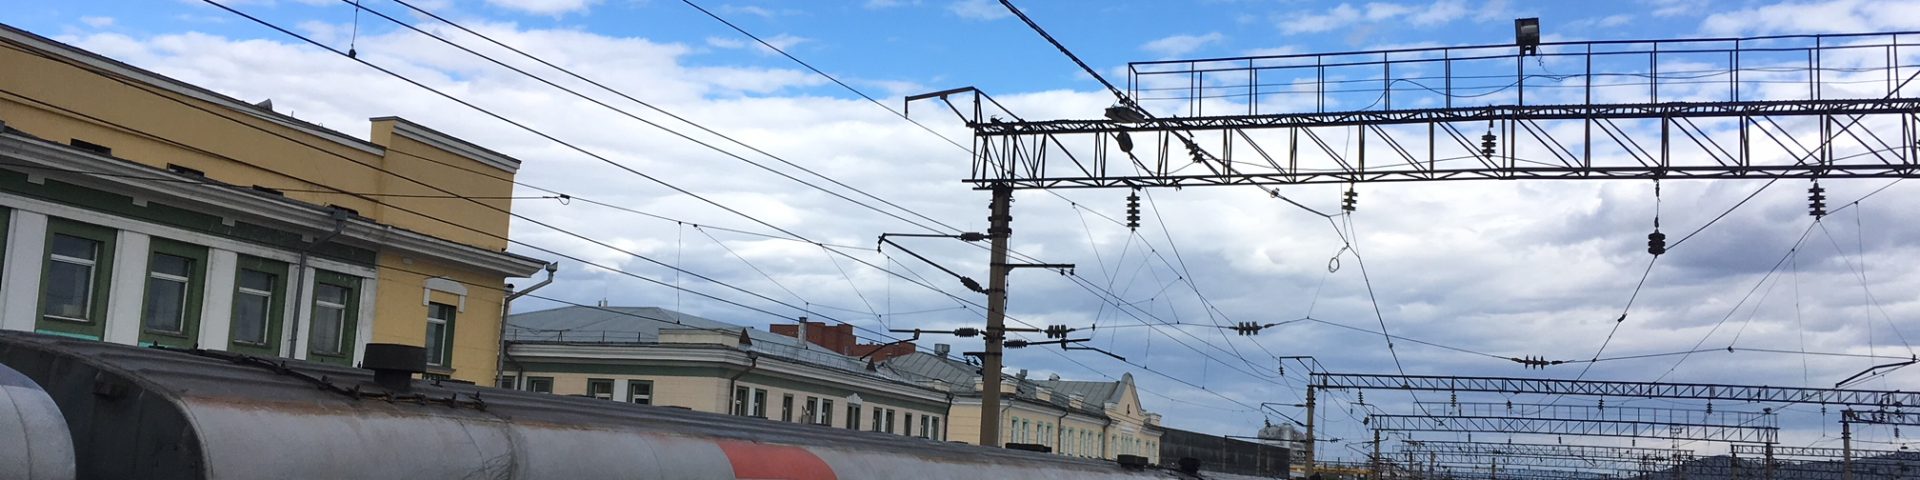 Transsibirische eisenbahn Bahnhof